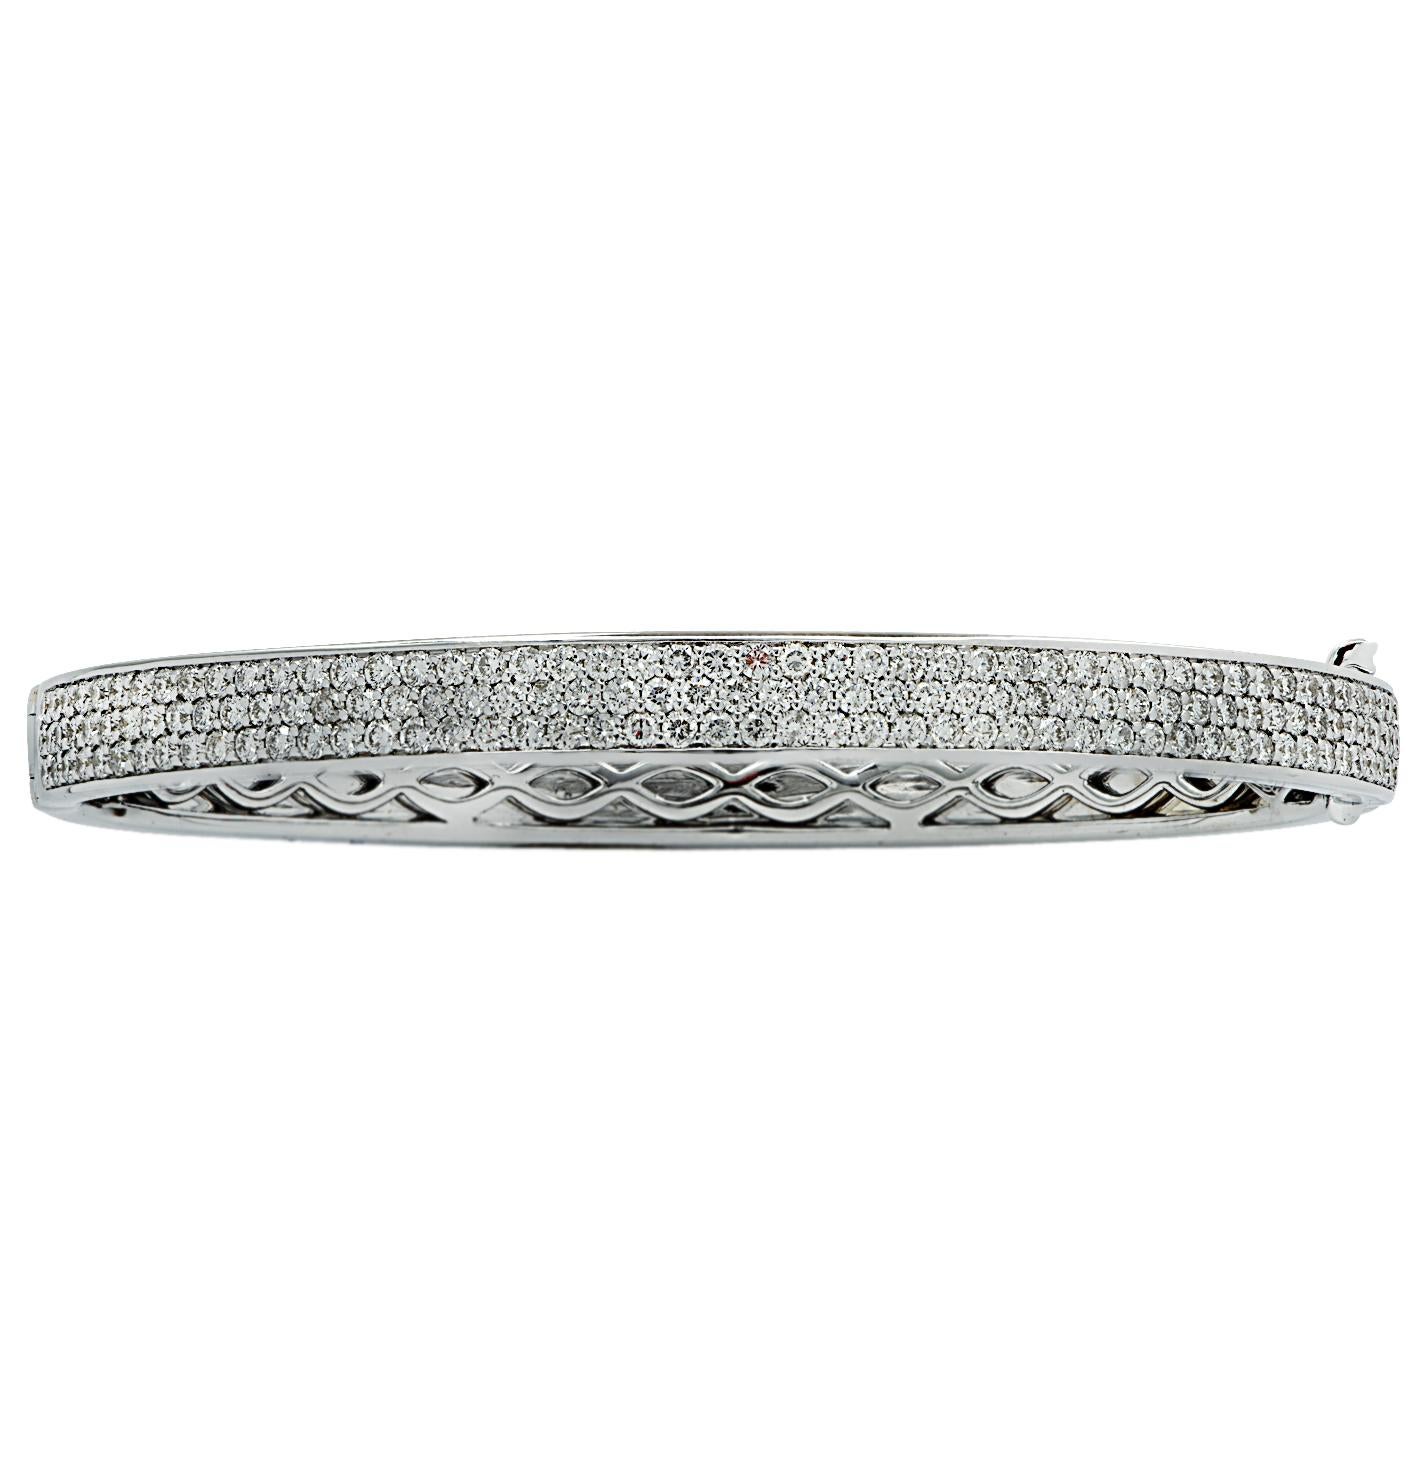 Superbe bracelet bracelet Vivid Diamonds en or blanc 18 carats, comportant 302 diamants ronds de taille brillant pesant 4.70 carats au total, couleur F, pureté VS-SI. Ce bracelet spectaculaire est serti de trois rangées de diamants, qui éblouissent